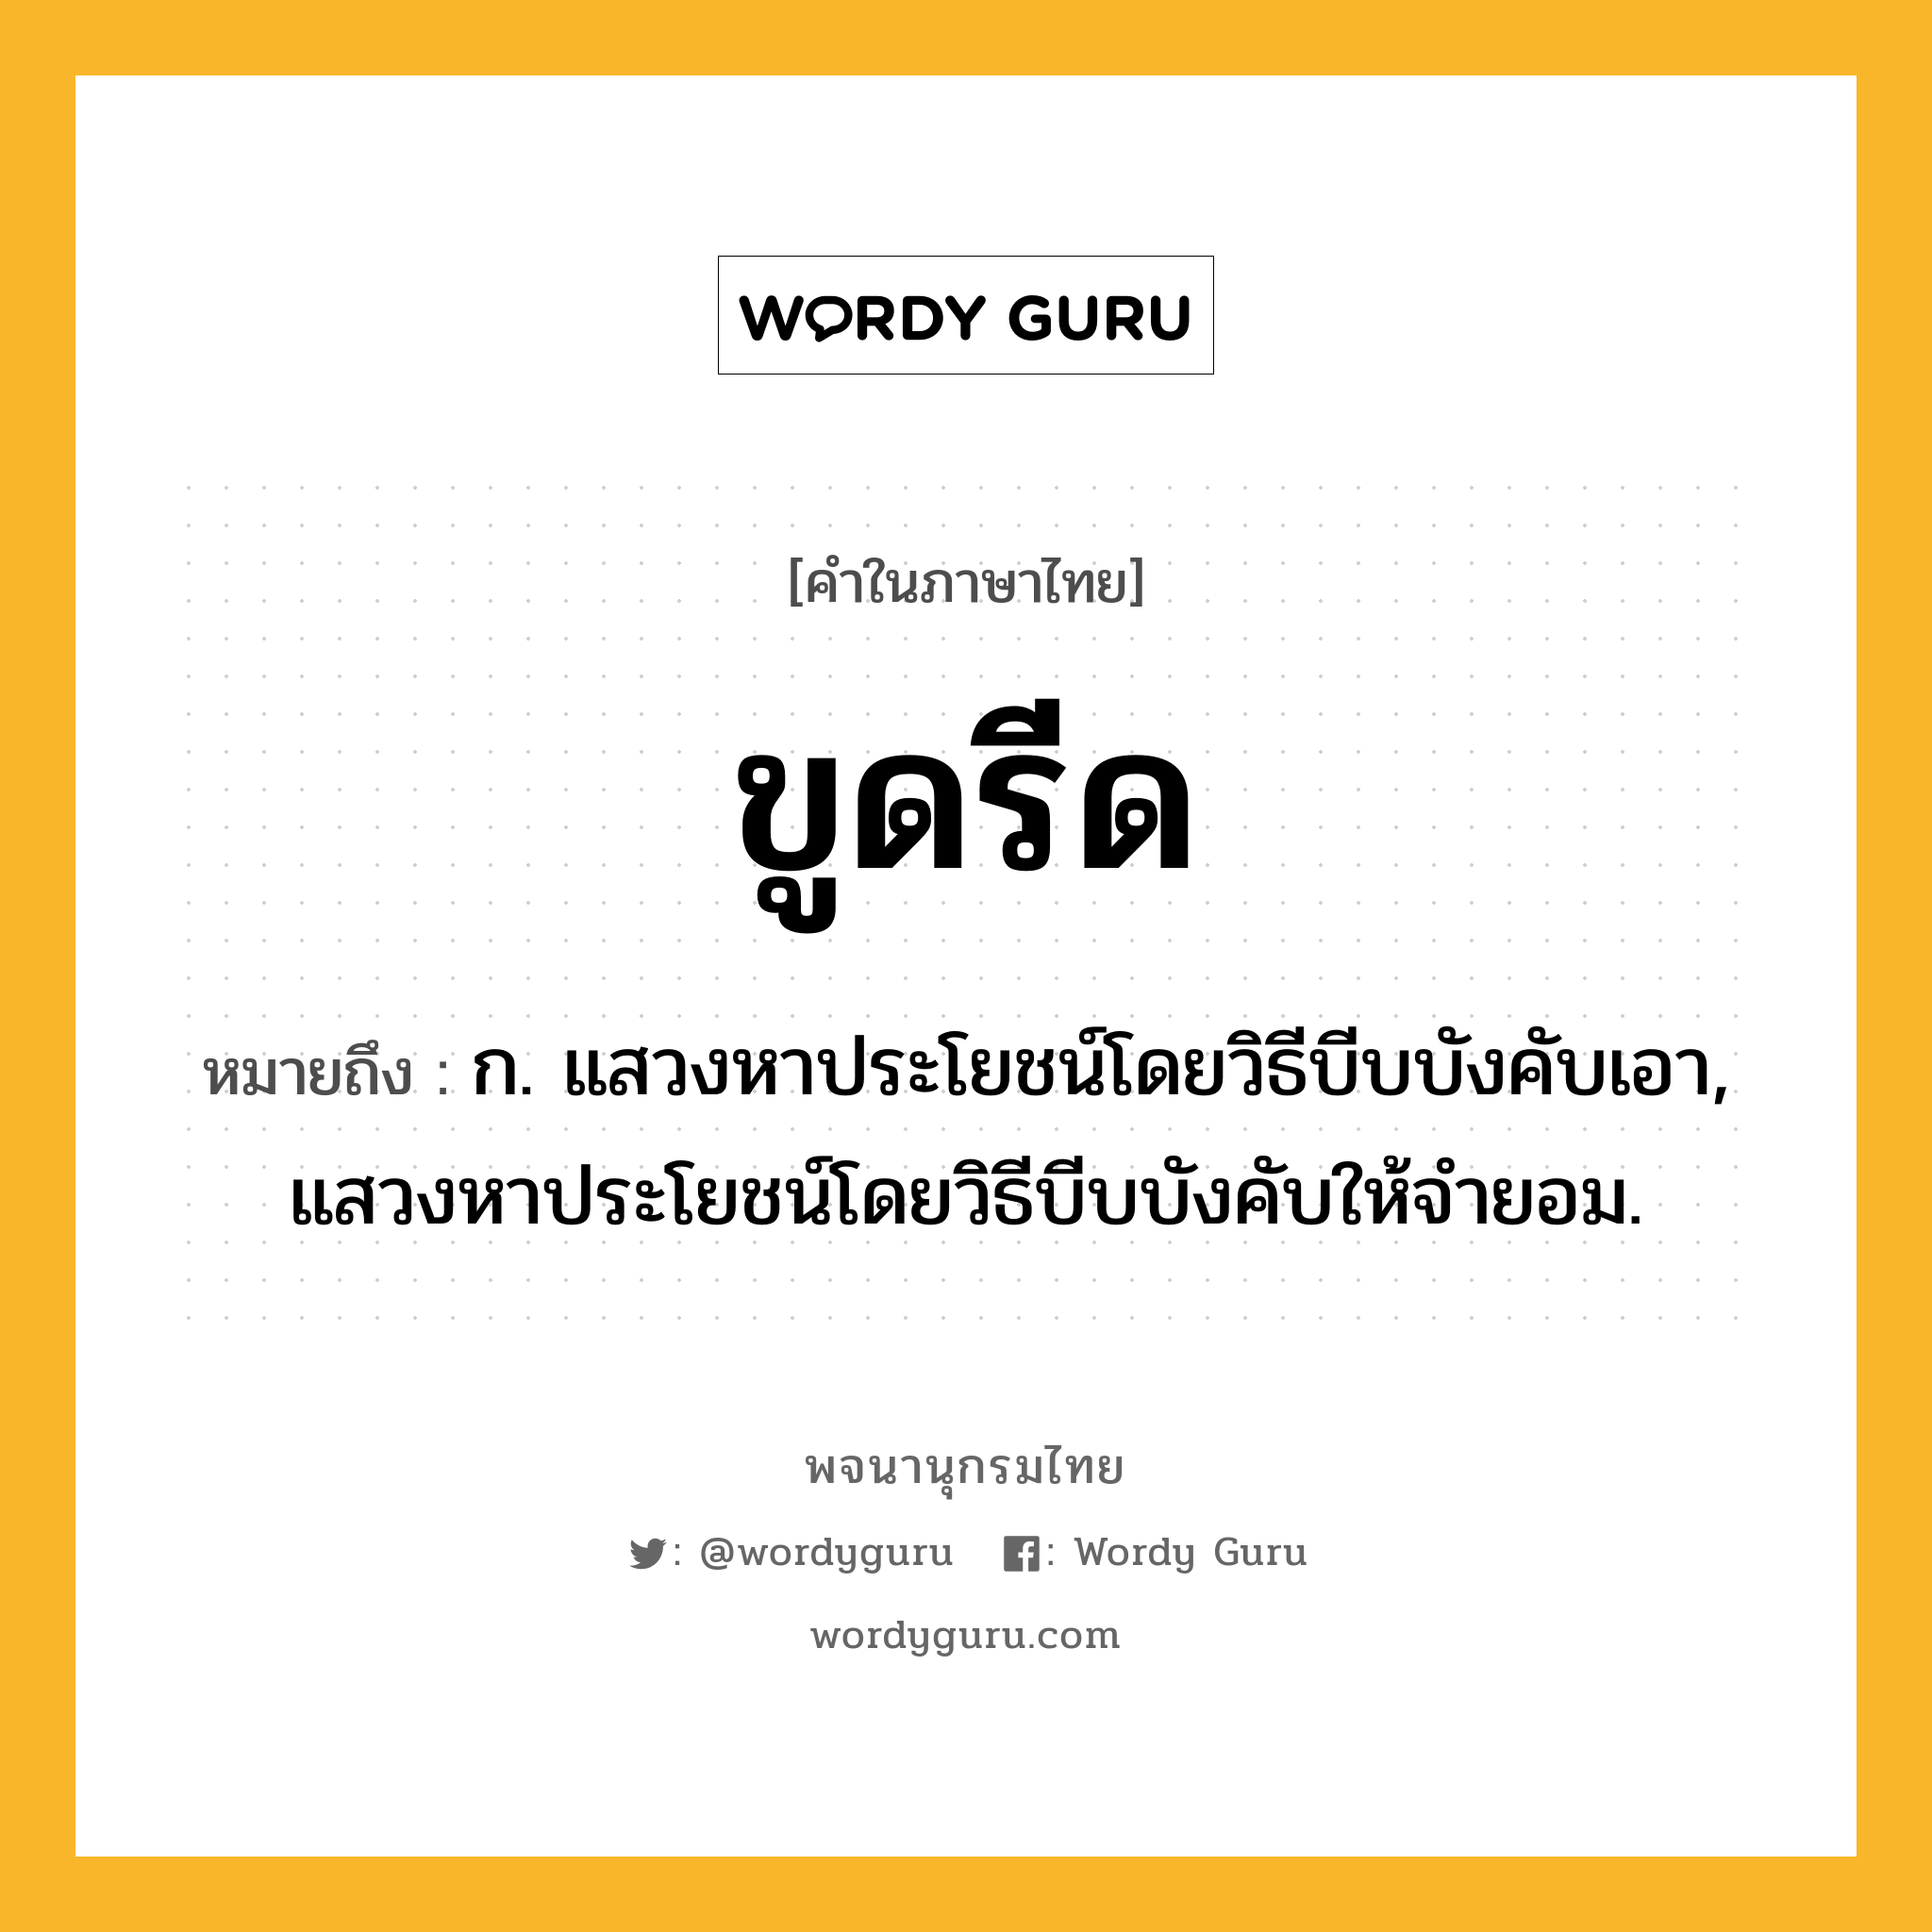 ขูดรีด ความหมาย หมายถึงอะไร?, คำในภาษาไทย ขูดรีด หมายถึง ก. แสวงหาประโยชน์โดยวิธีบีบบังคับเอา, แสวงหาประโยชน์โดยวิธีบีบบังคับให้จํายอม.